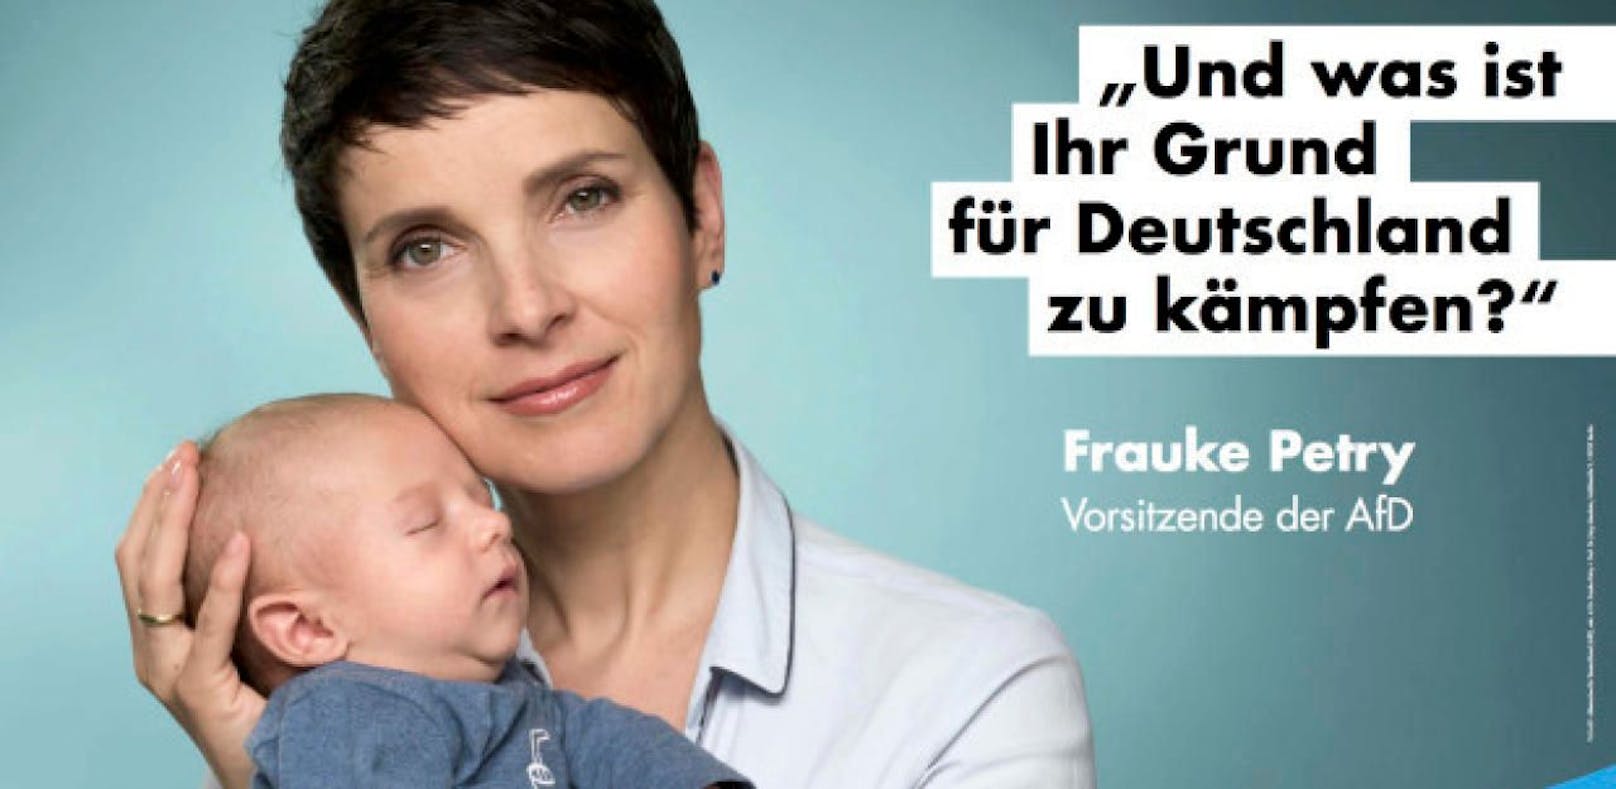 Die AfD-Vorsitzende Frauke Petry zeigt sich auf dem Wahlplakat mit ihrem im Mai geborenen fünften Kind.